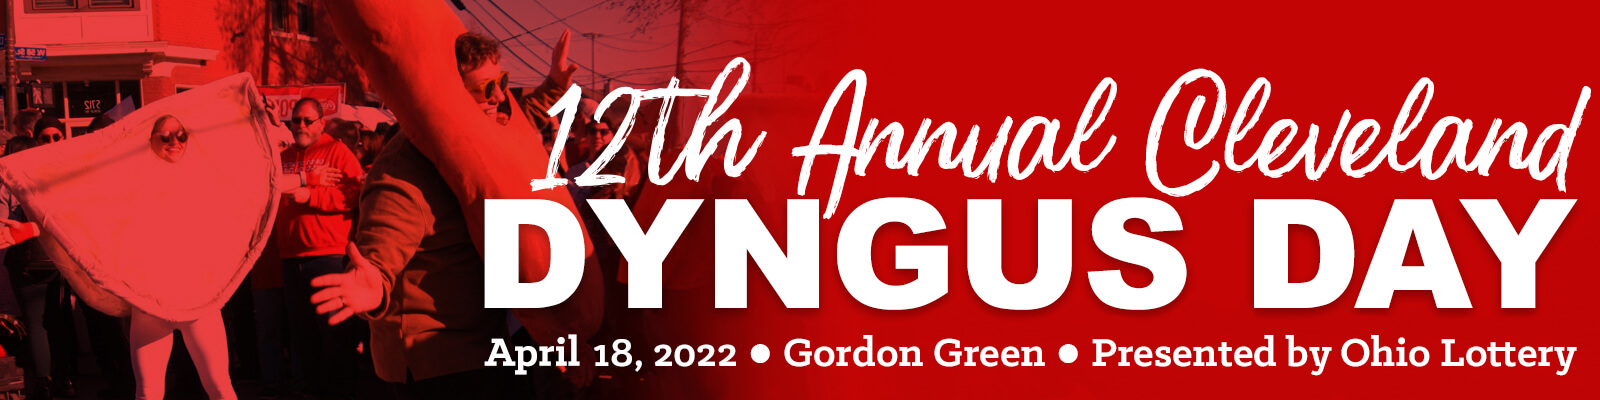 Dyngus Day Cleveland - April 18, 2022 - Gordon Green